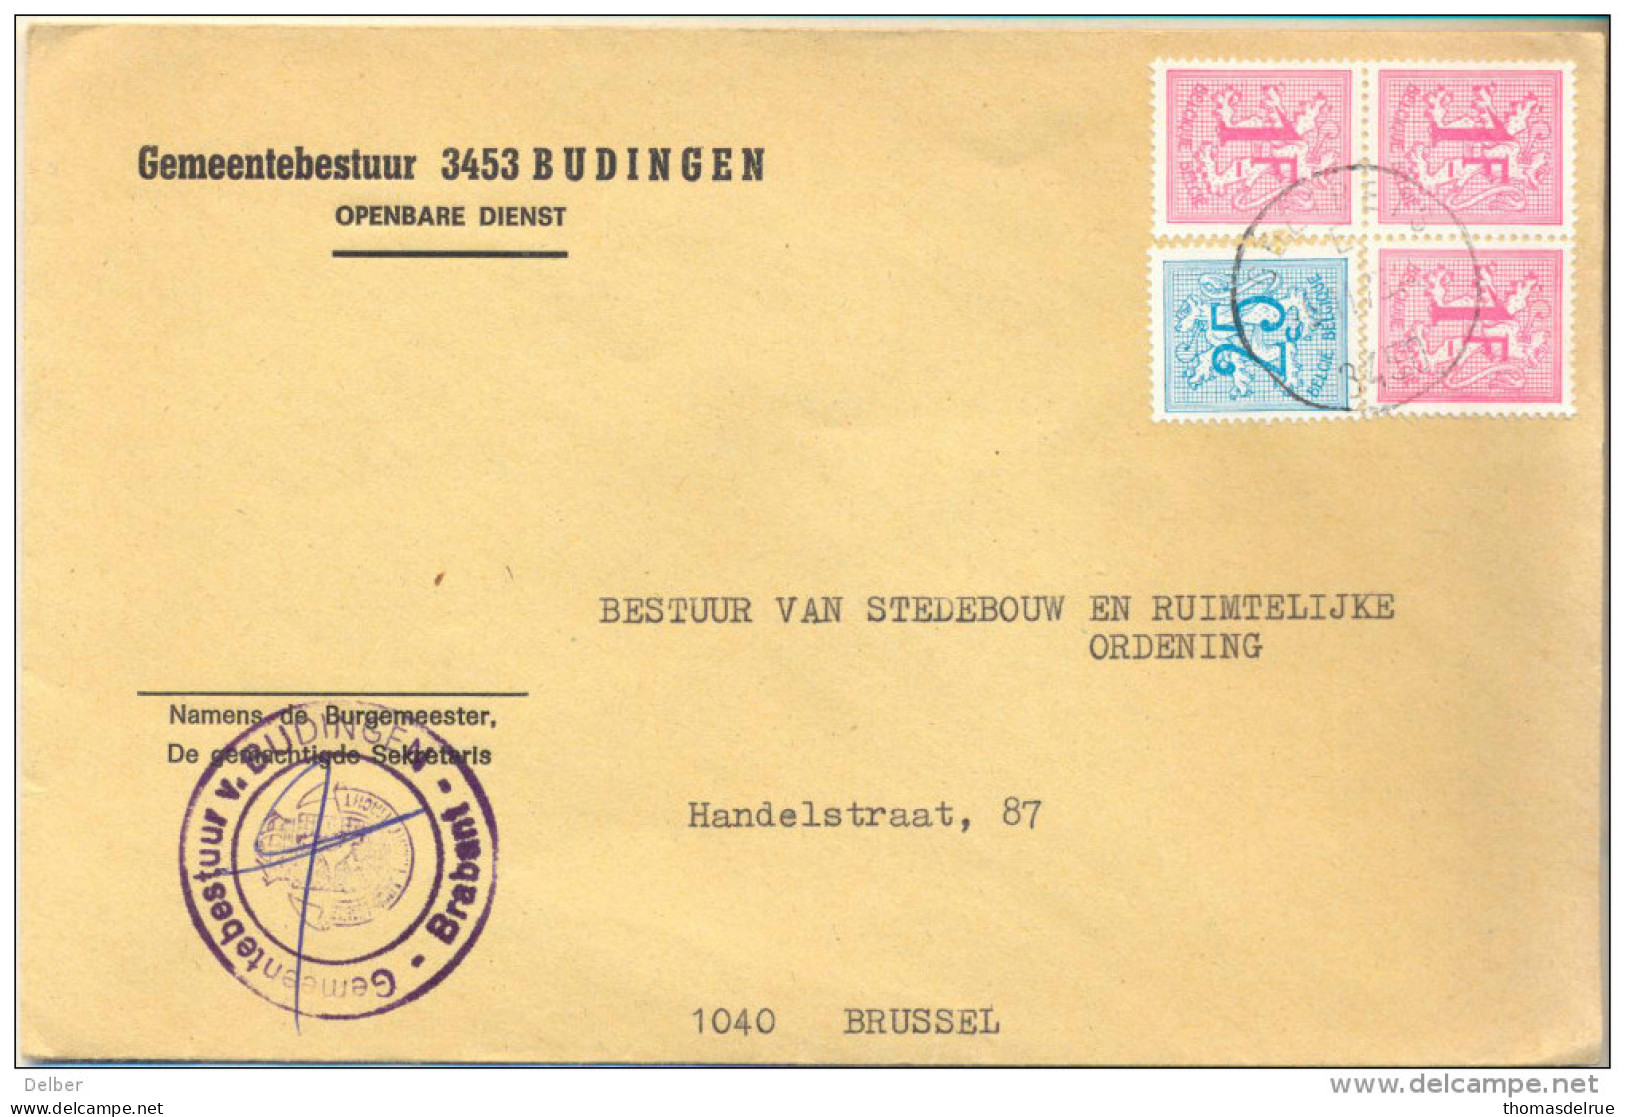 4Za928 : Open Omslag: GEMEENTEBESTUUR 3453 BUDINGEN 3,25 F Port > 1040 Brussel+ Contreseing . - 1951-1975 Heraldieke Leeuw